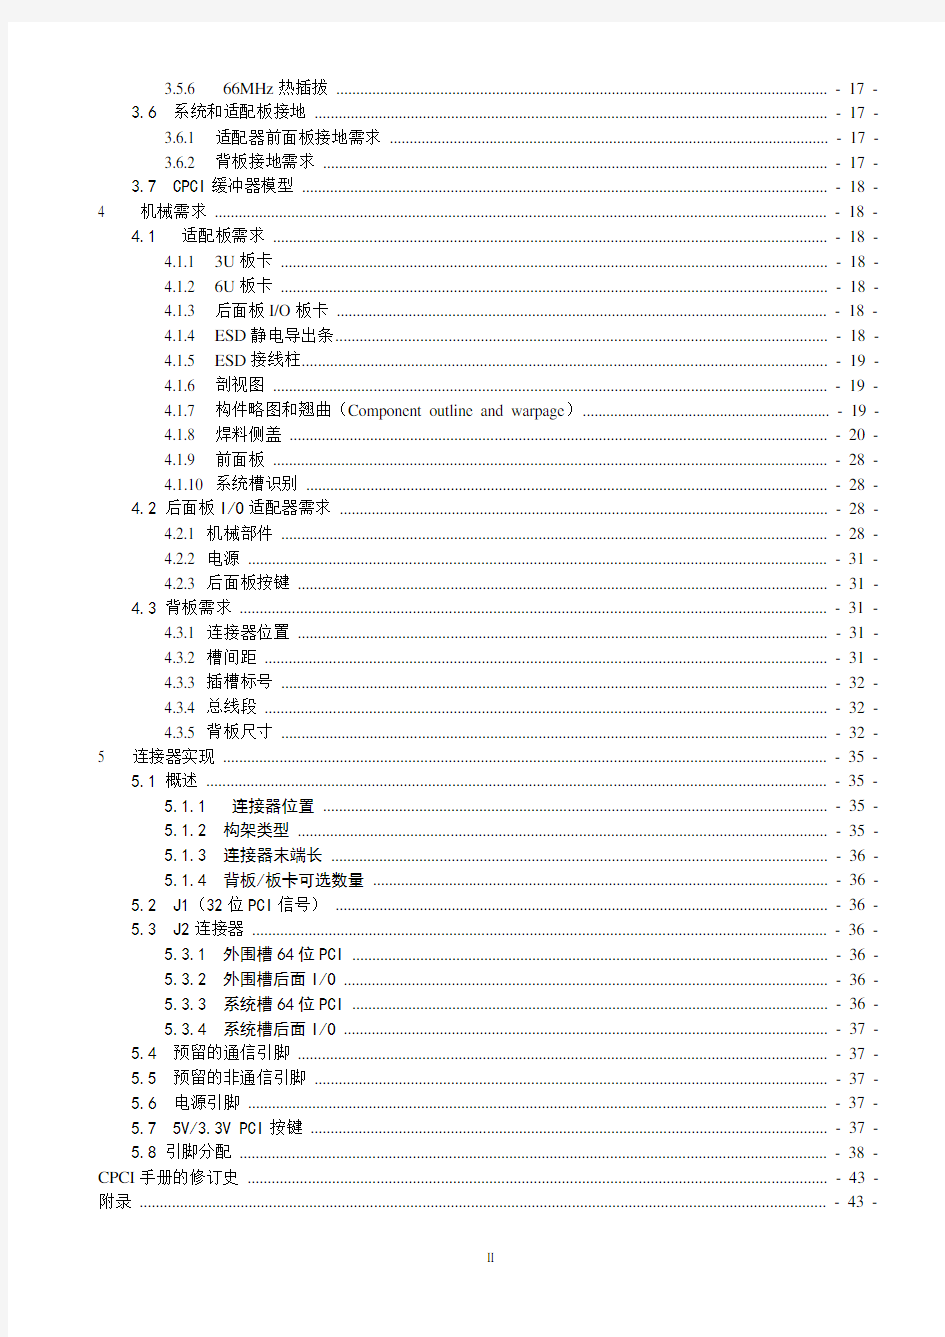 CPCI2.0标准规范(中文)